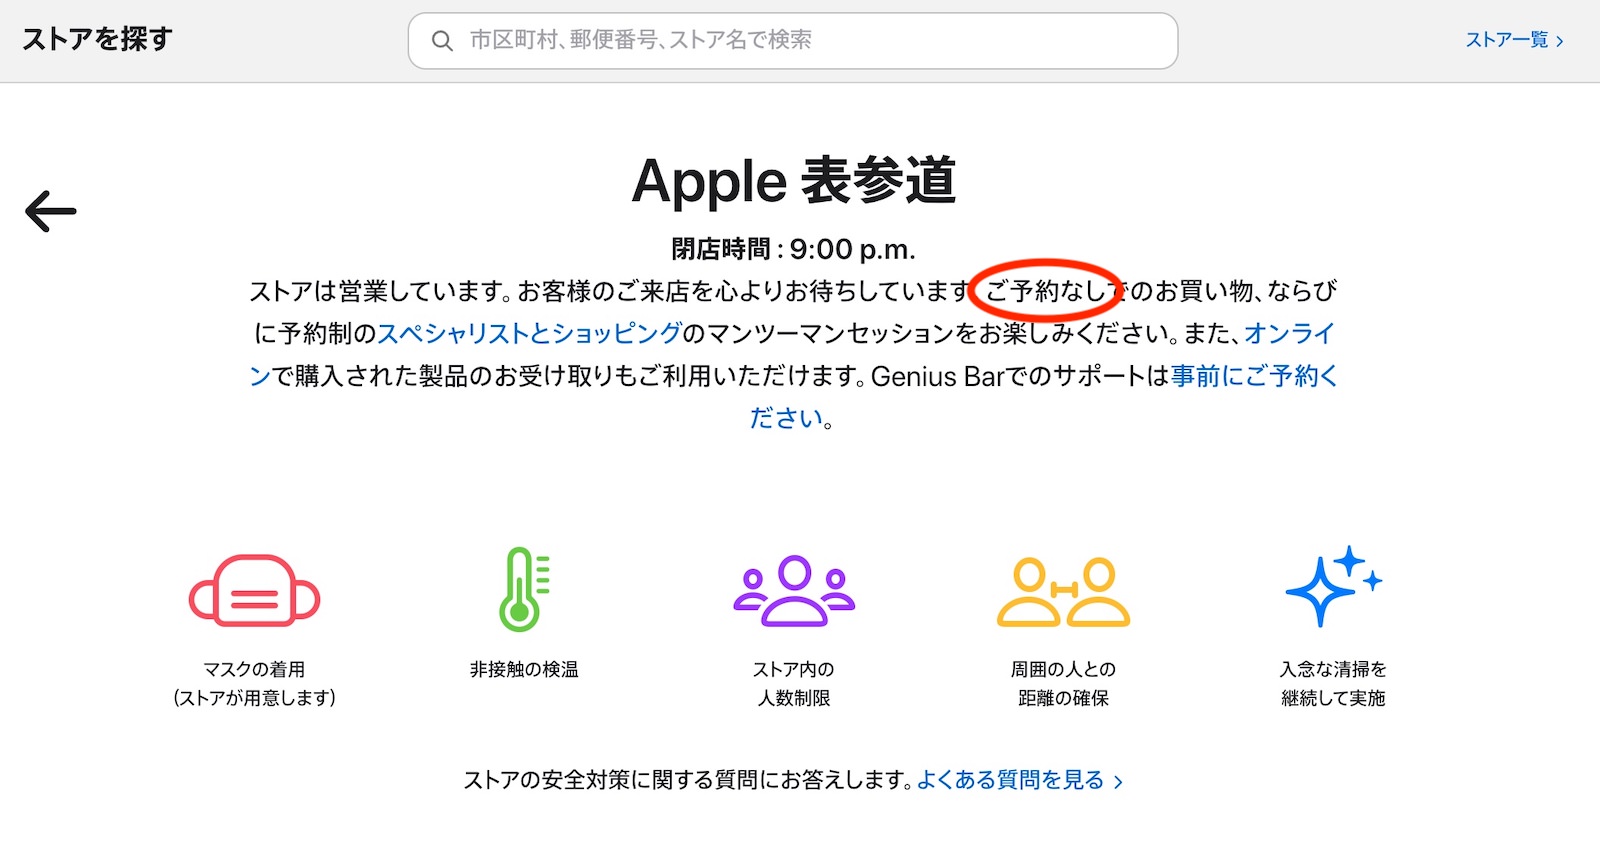 Apple Omotesando no preorder